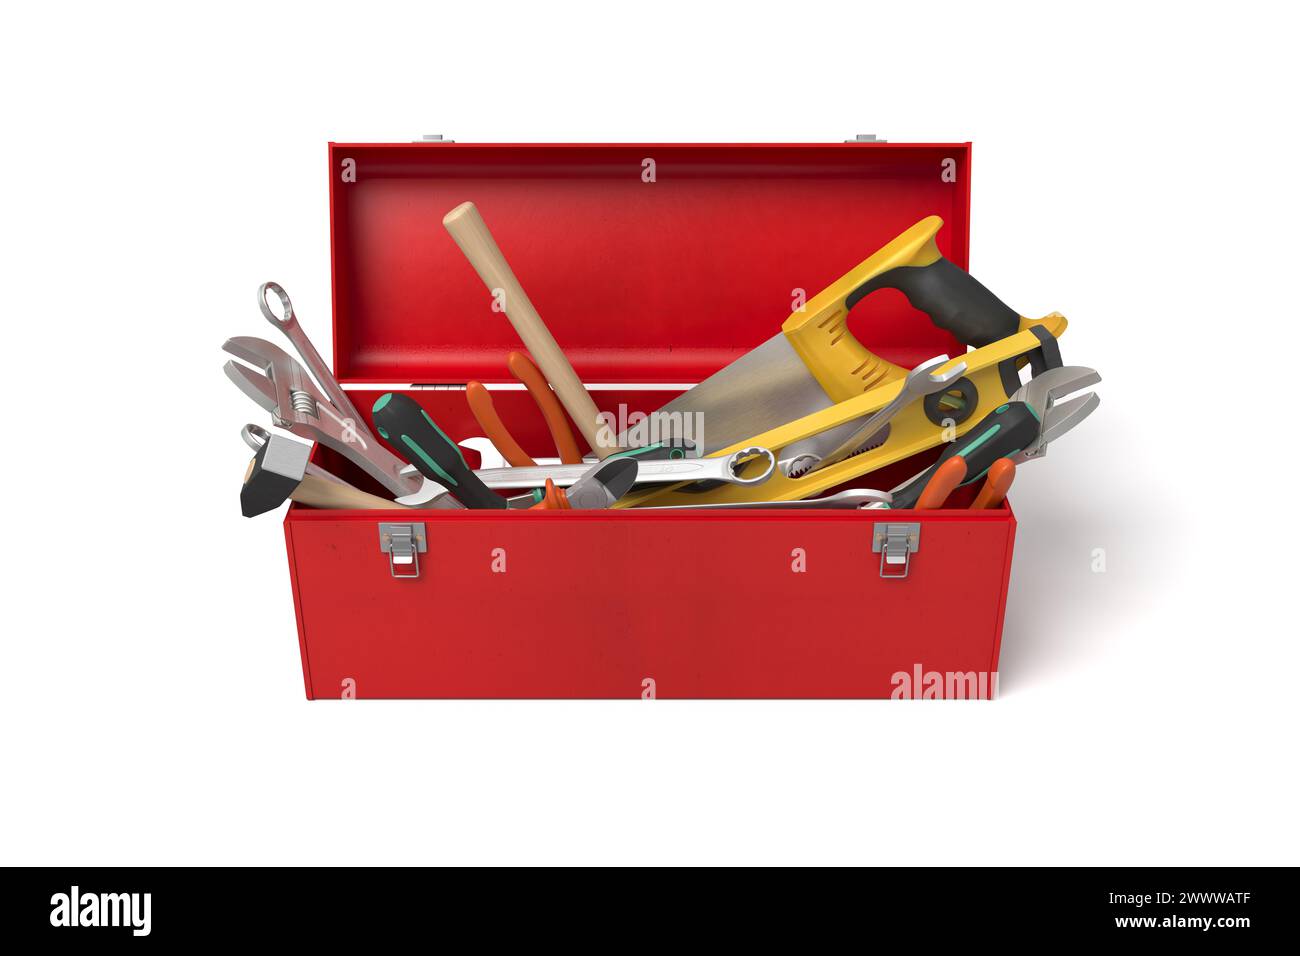 Caja de herramientas roja con herramientas organizadas cuidadosamente Foto de stock